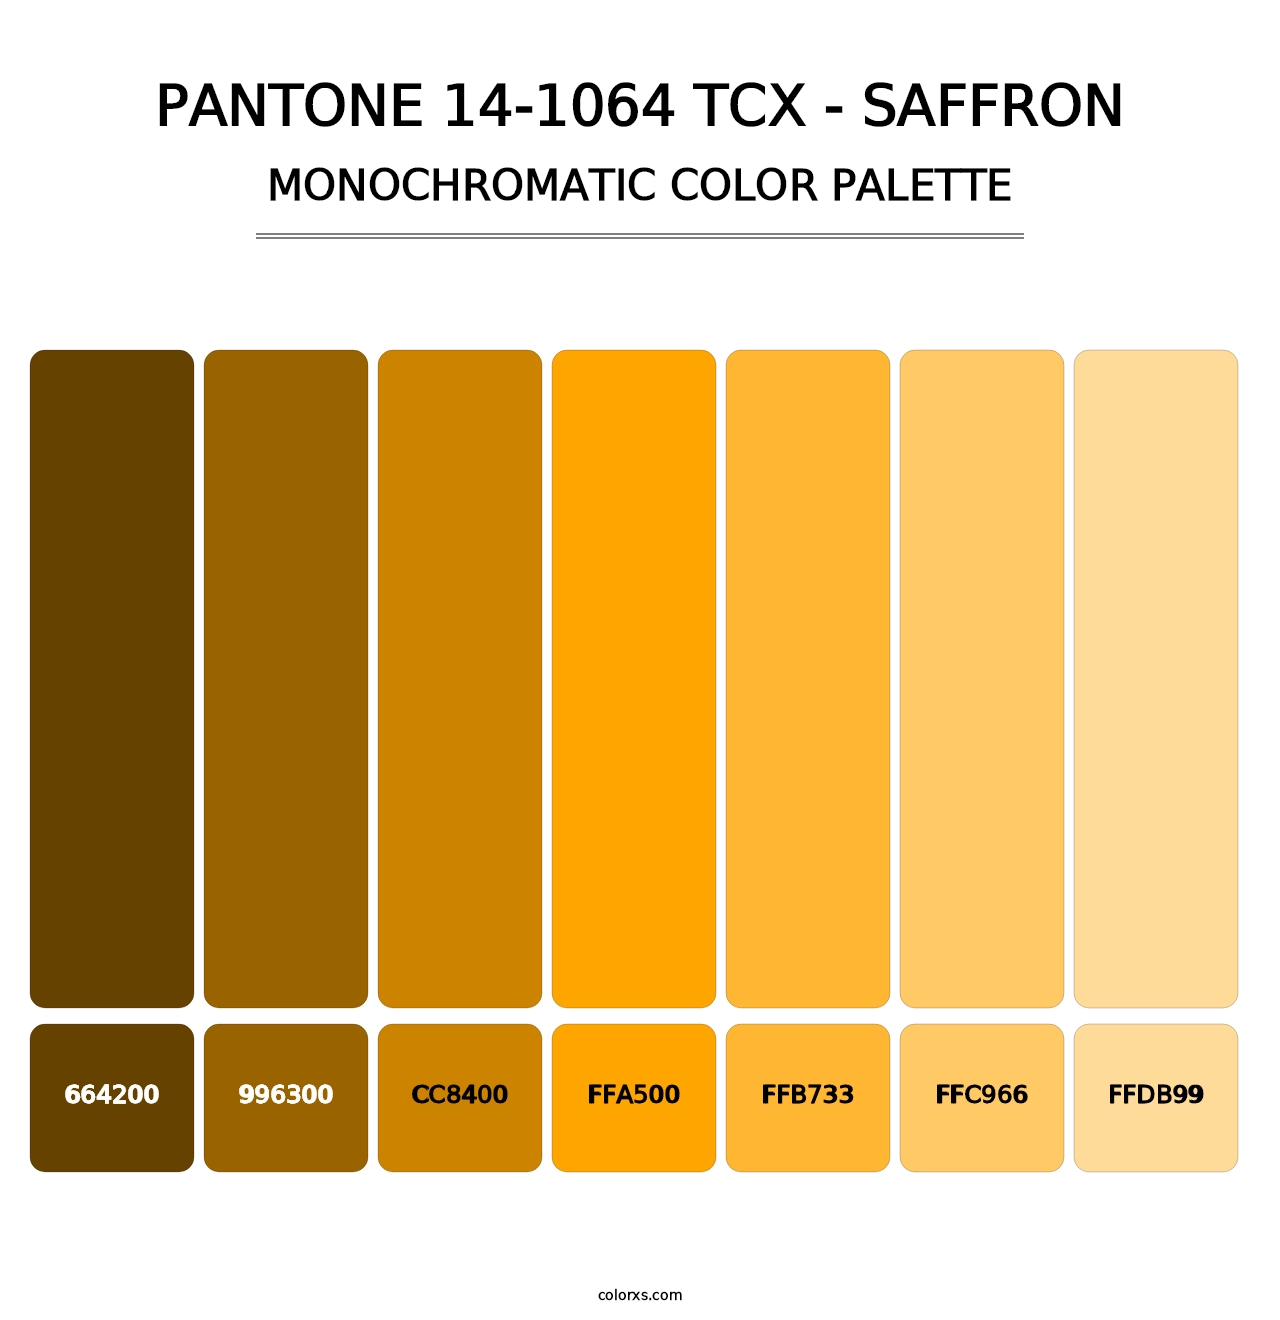 PANTONE 14-1064 TCX - Saffron - Monochromatic Color Palette